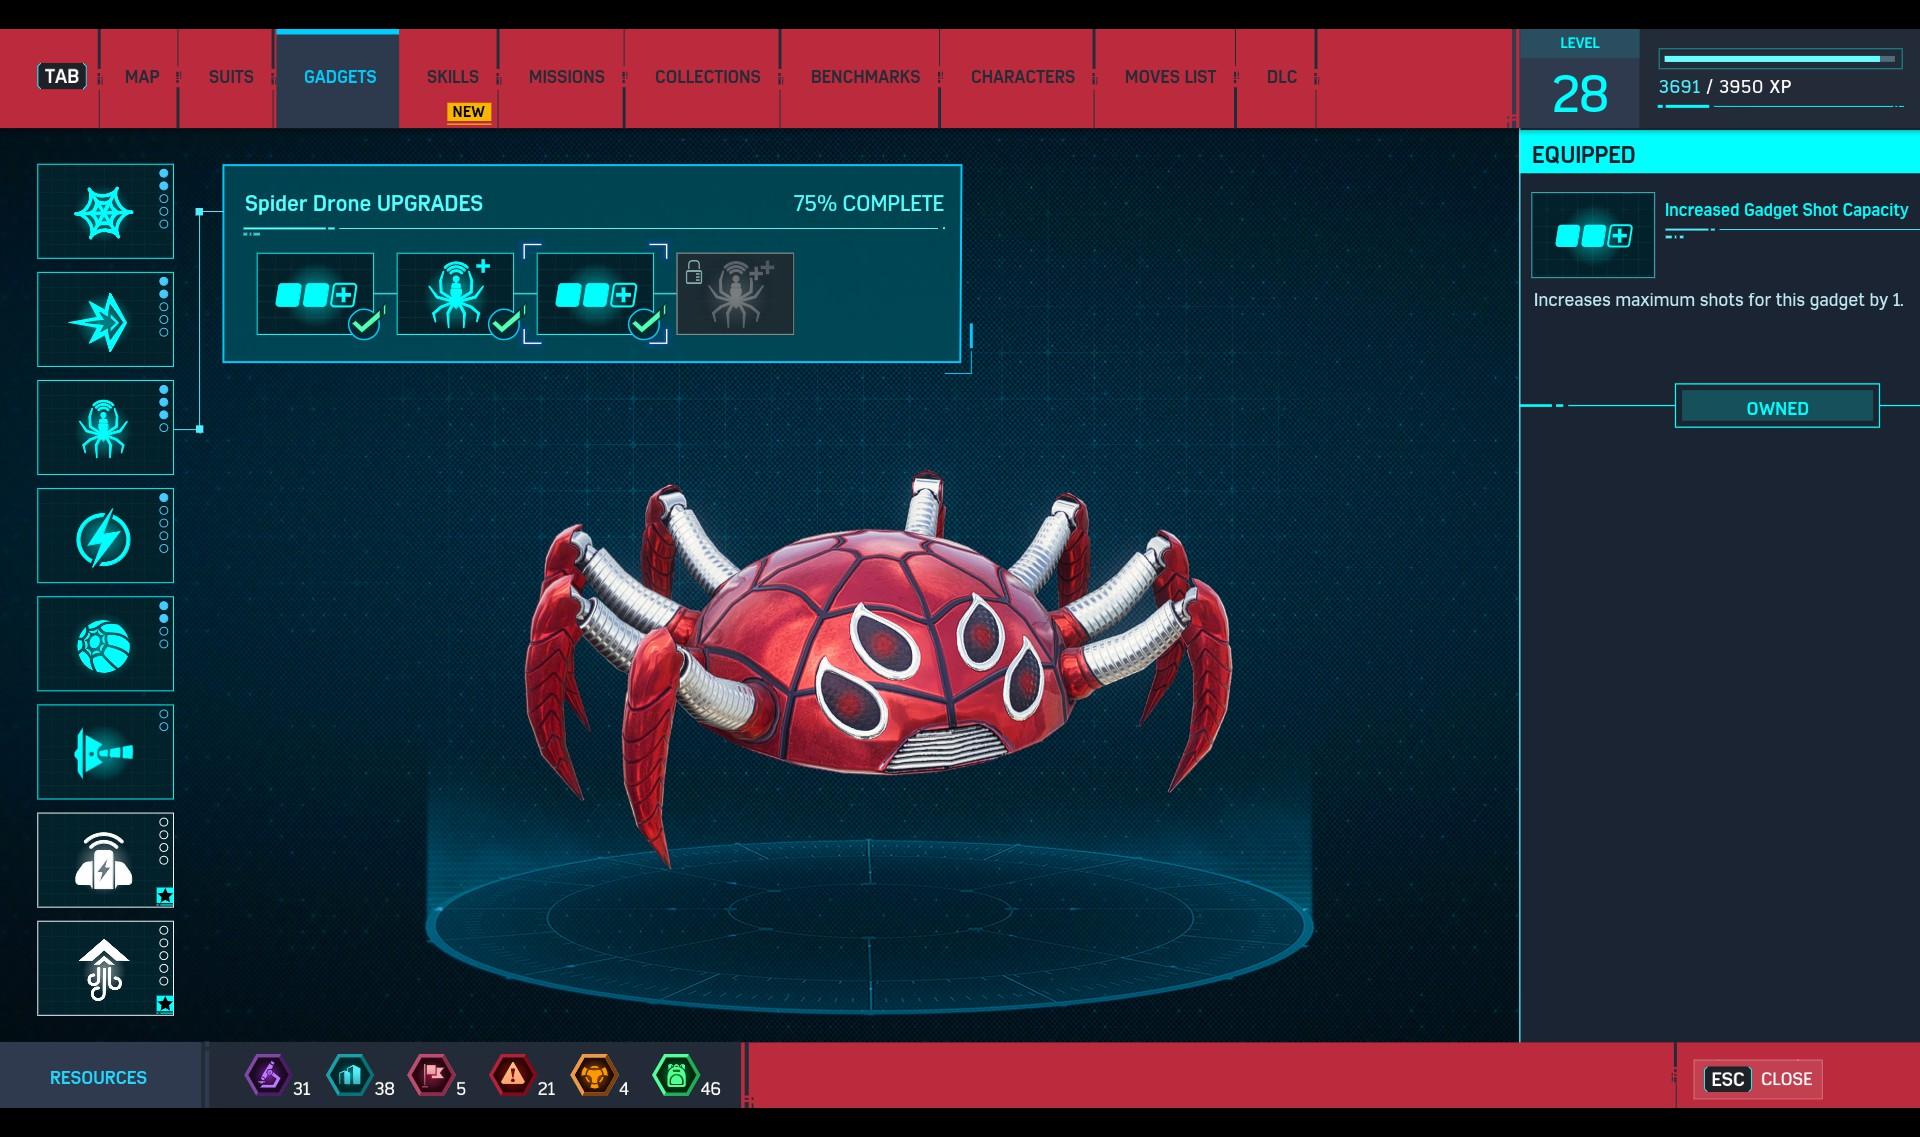 Obrázok z počítačovej verzie hry Marvel’s Spider-Man Remastered.